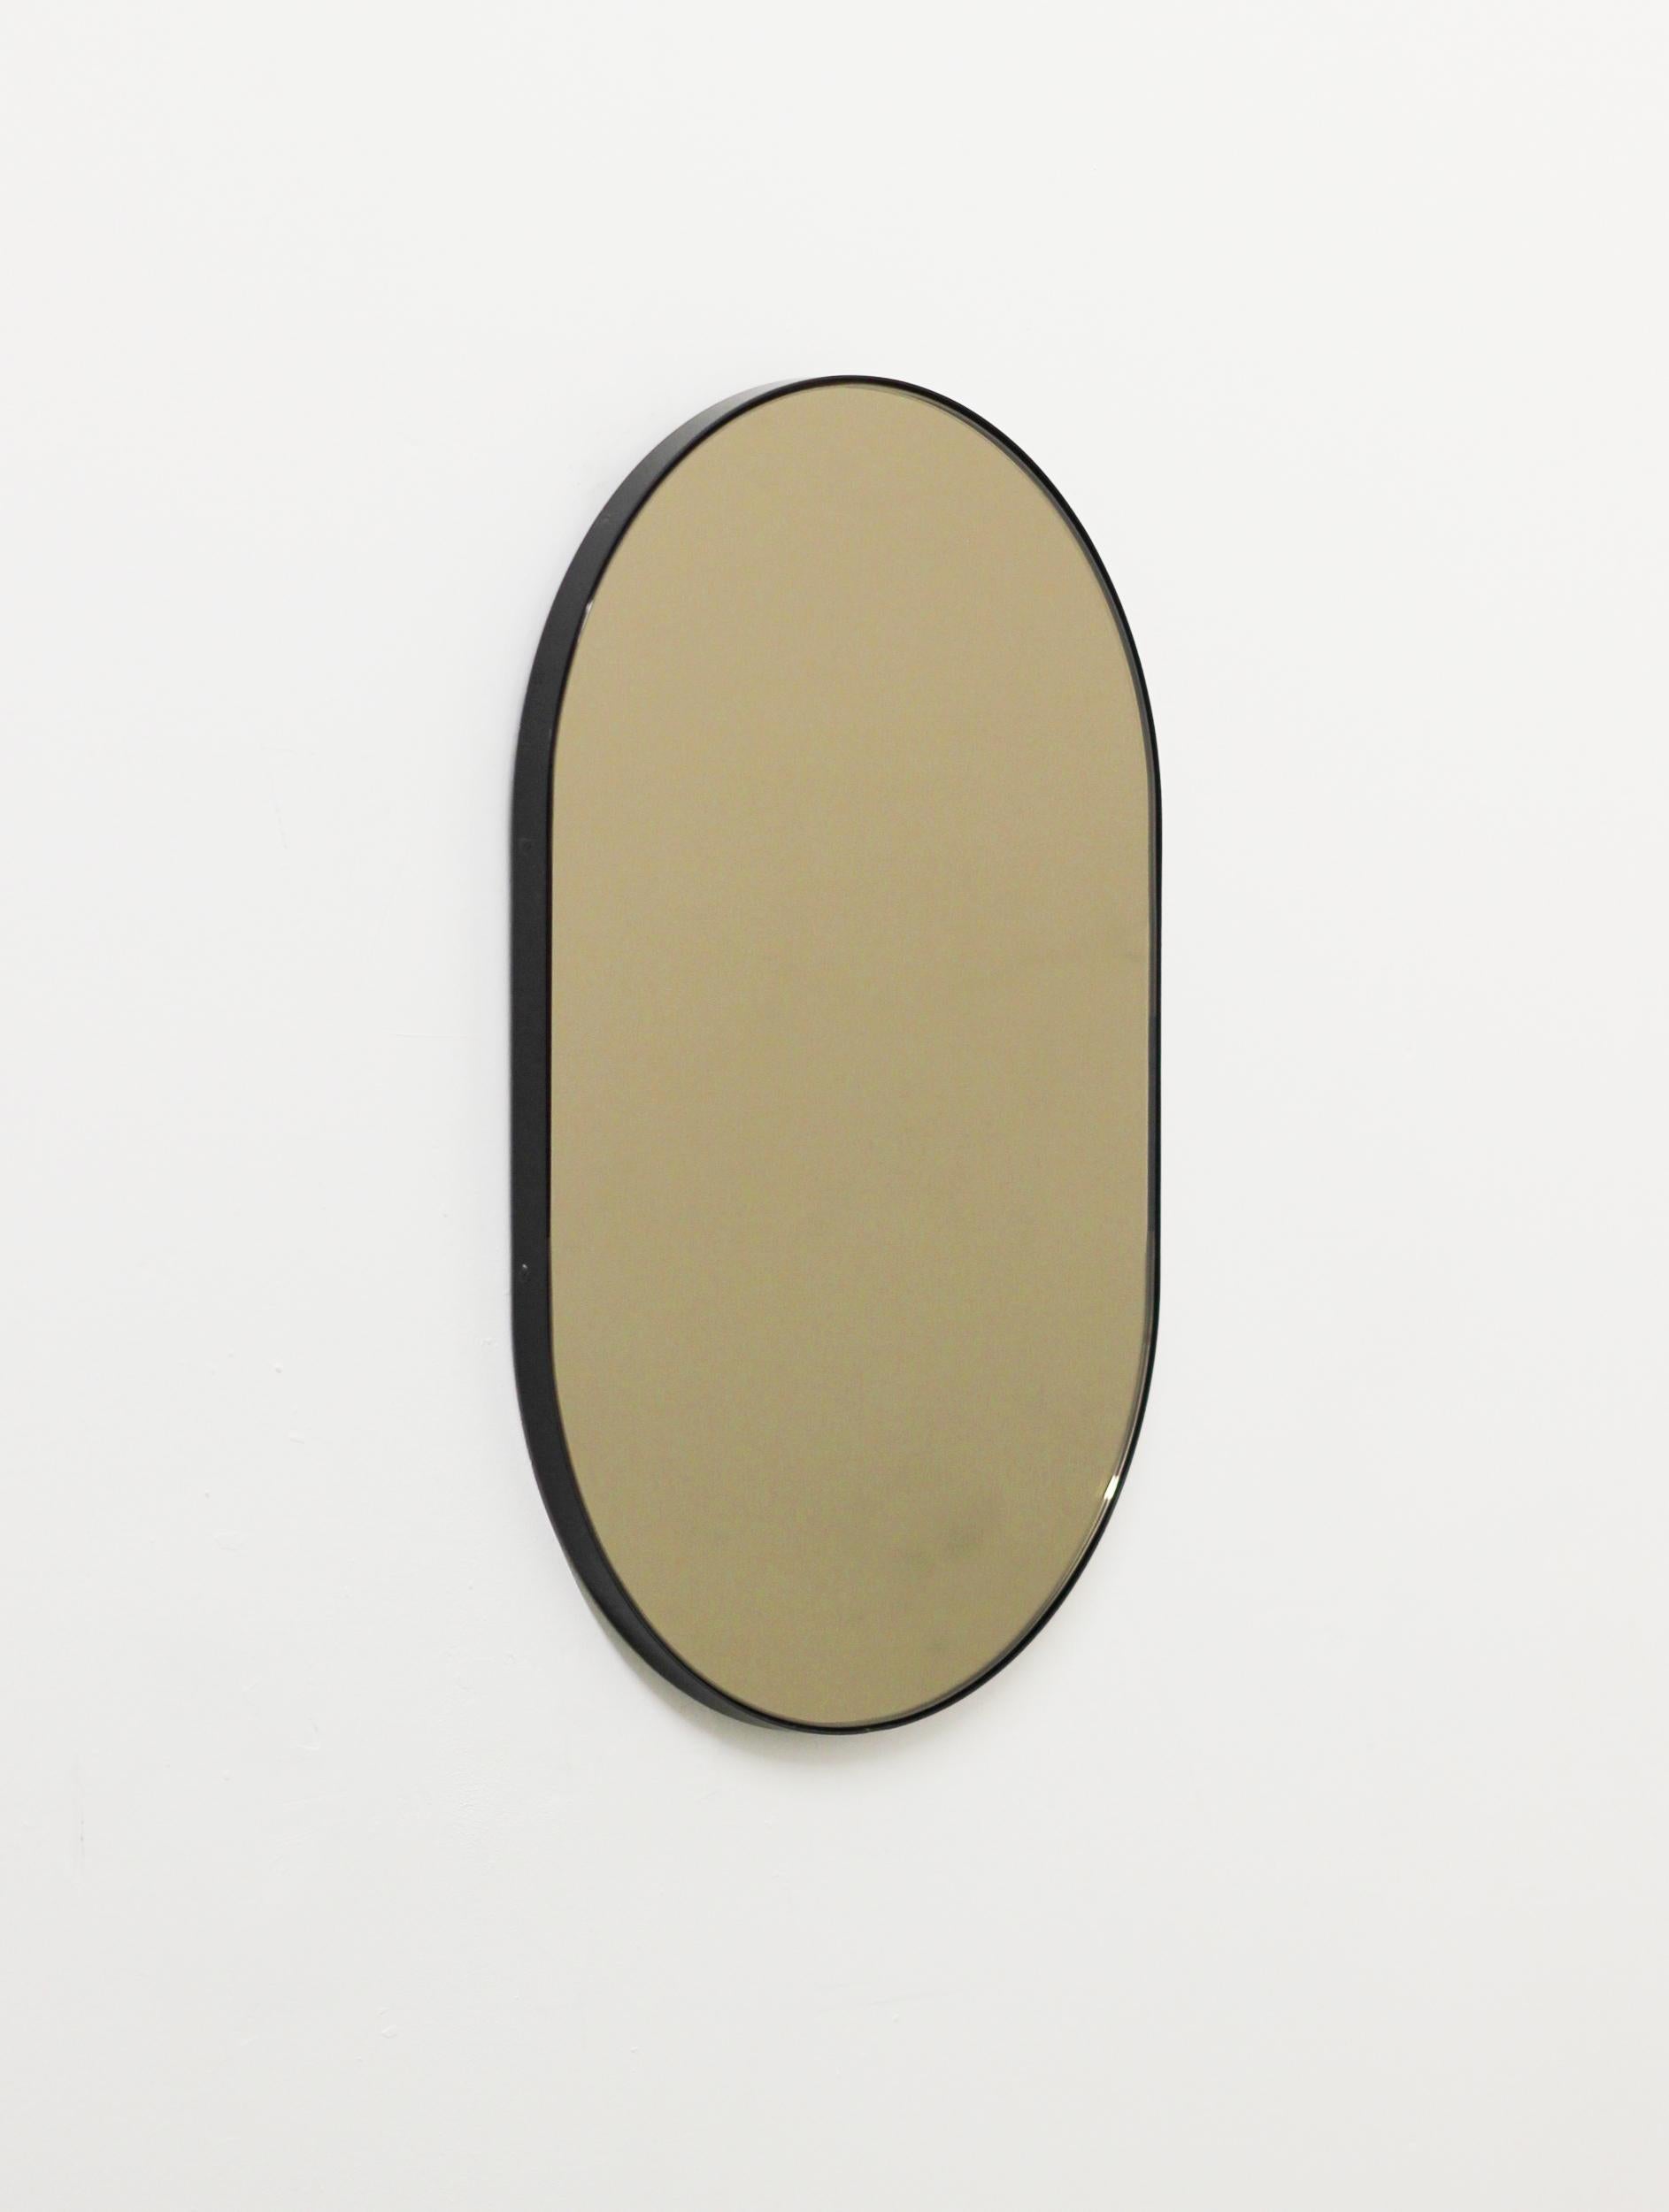 Moderner, handgefertigter, kapselförmiger, bronzefarben getönter Spiegel mit einem eleganten, schwarz pulverbeschichteten Aluminiumrahmen. Entworfen und handgefertigt in London, UK.

Je nach Größe des Spiegels mit einem Messinghaken oder einer